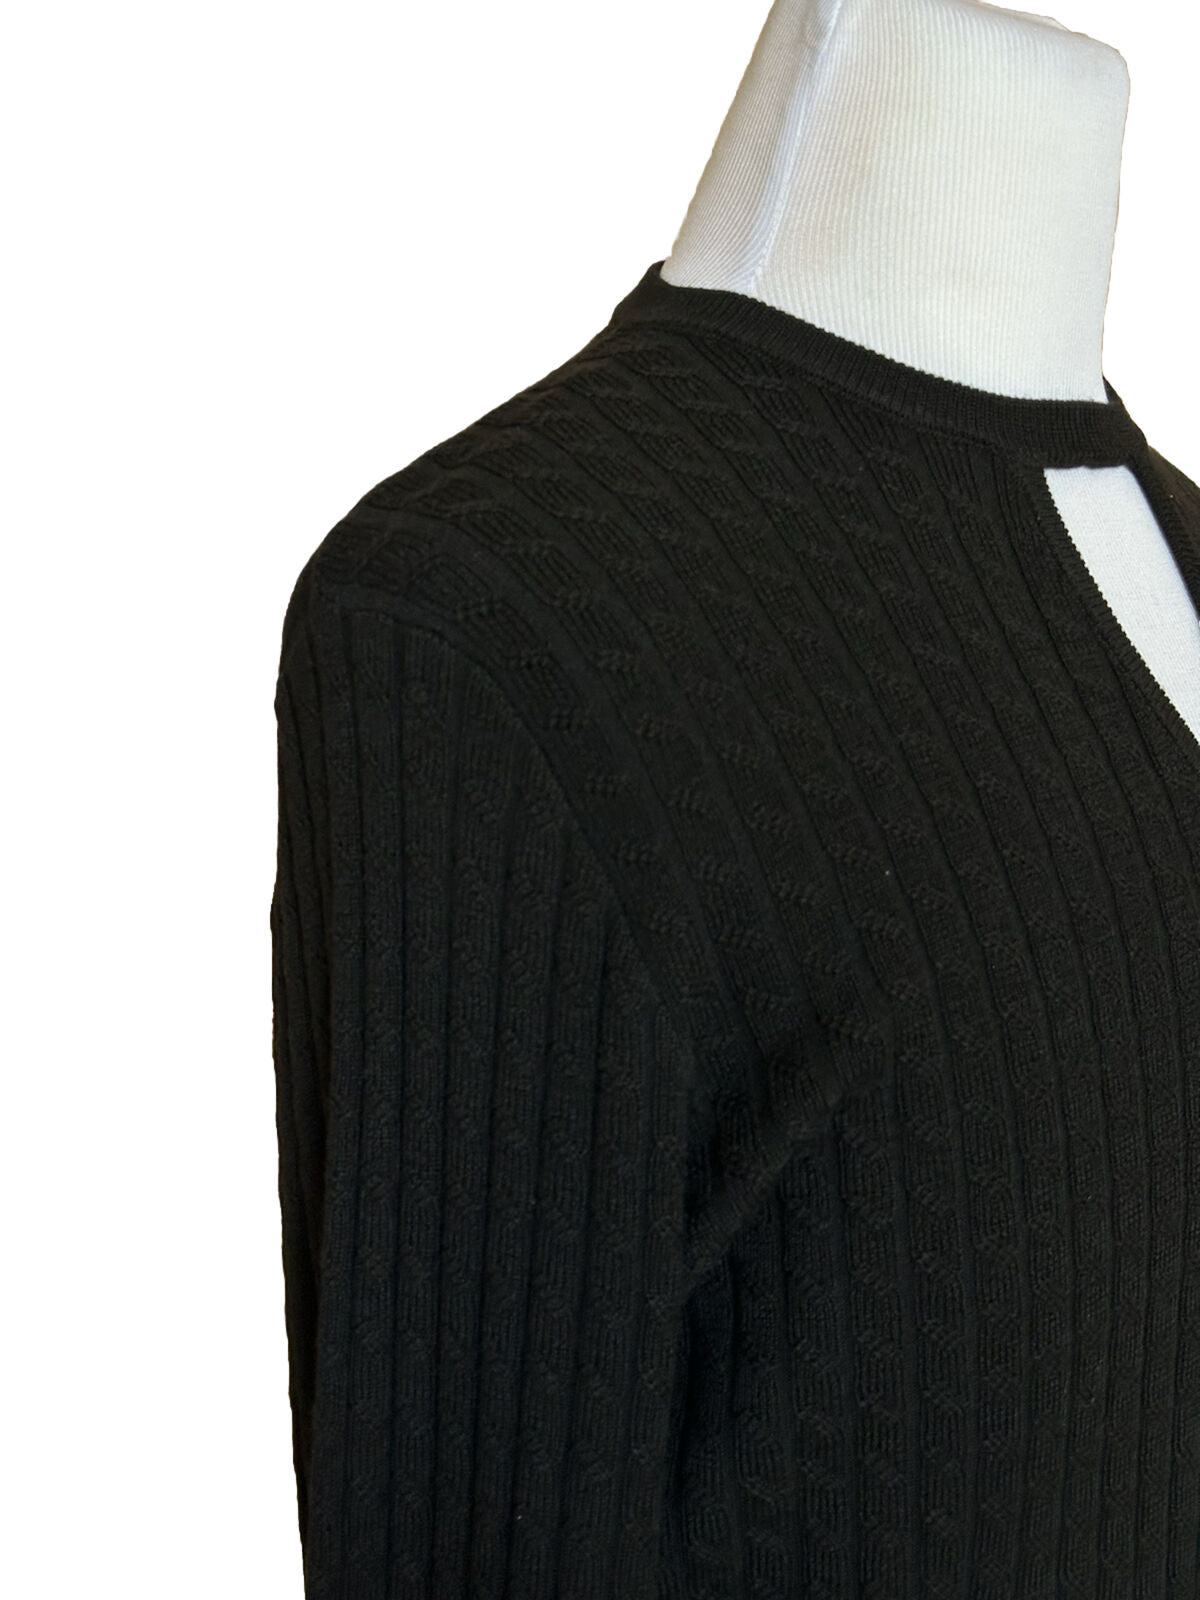 СЗТ 1250 долларов США Fendi Шерстяной вязаный пуловер Черный 52 евро FZX077 Сделано в Италии 